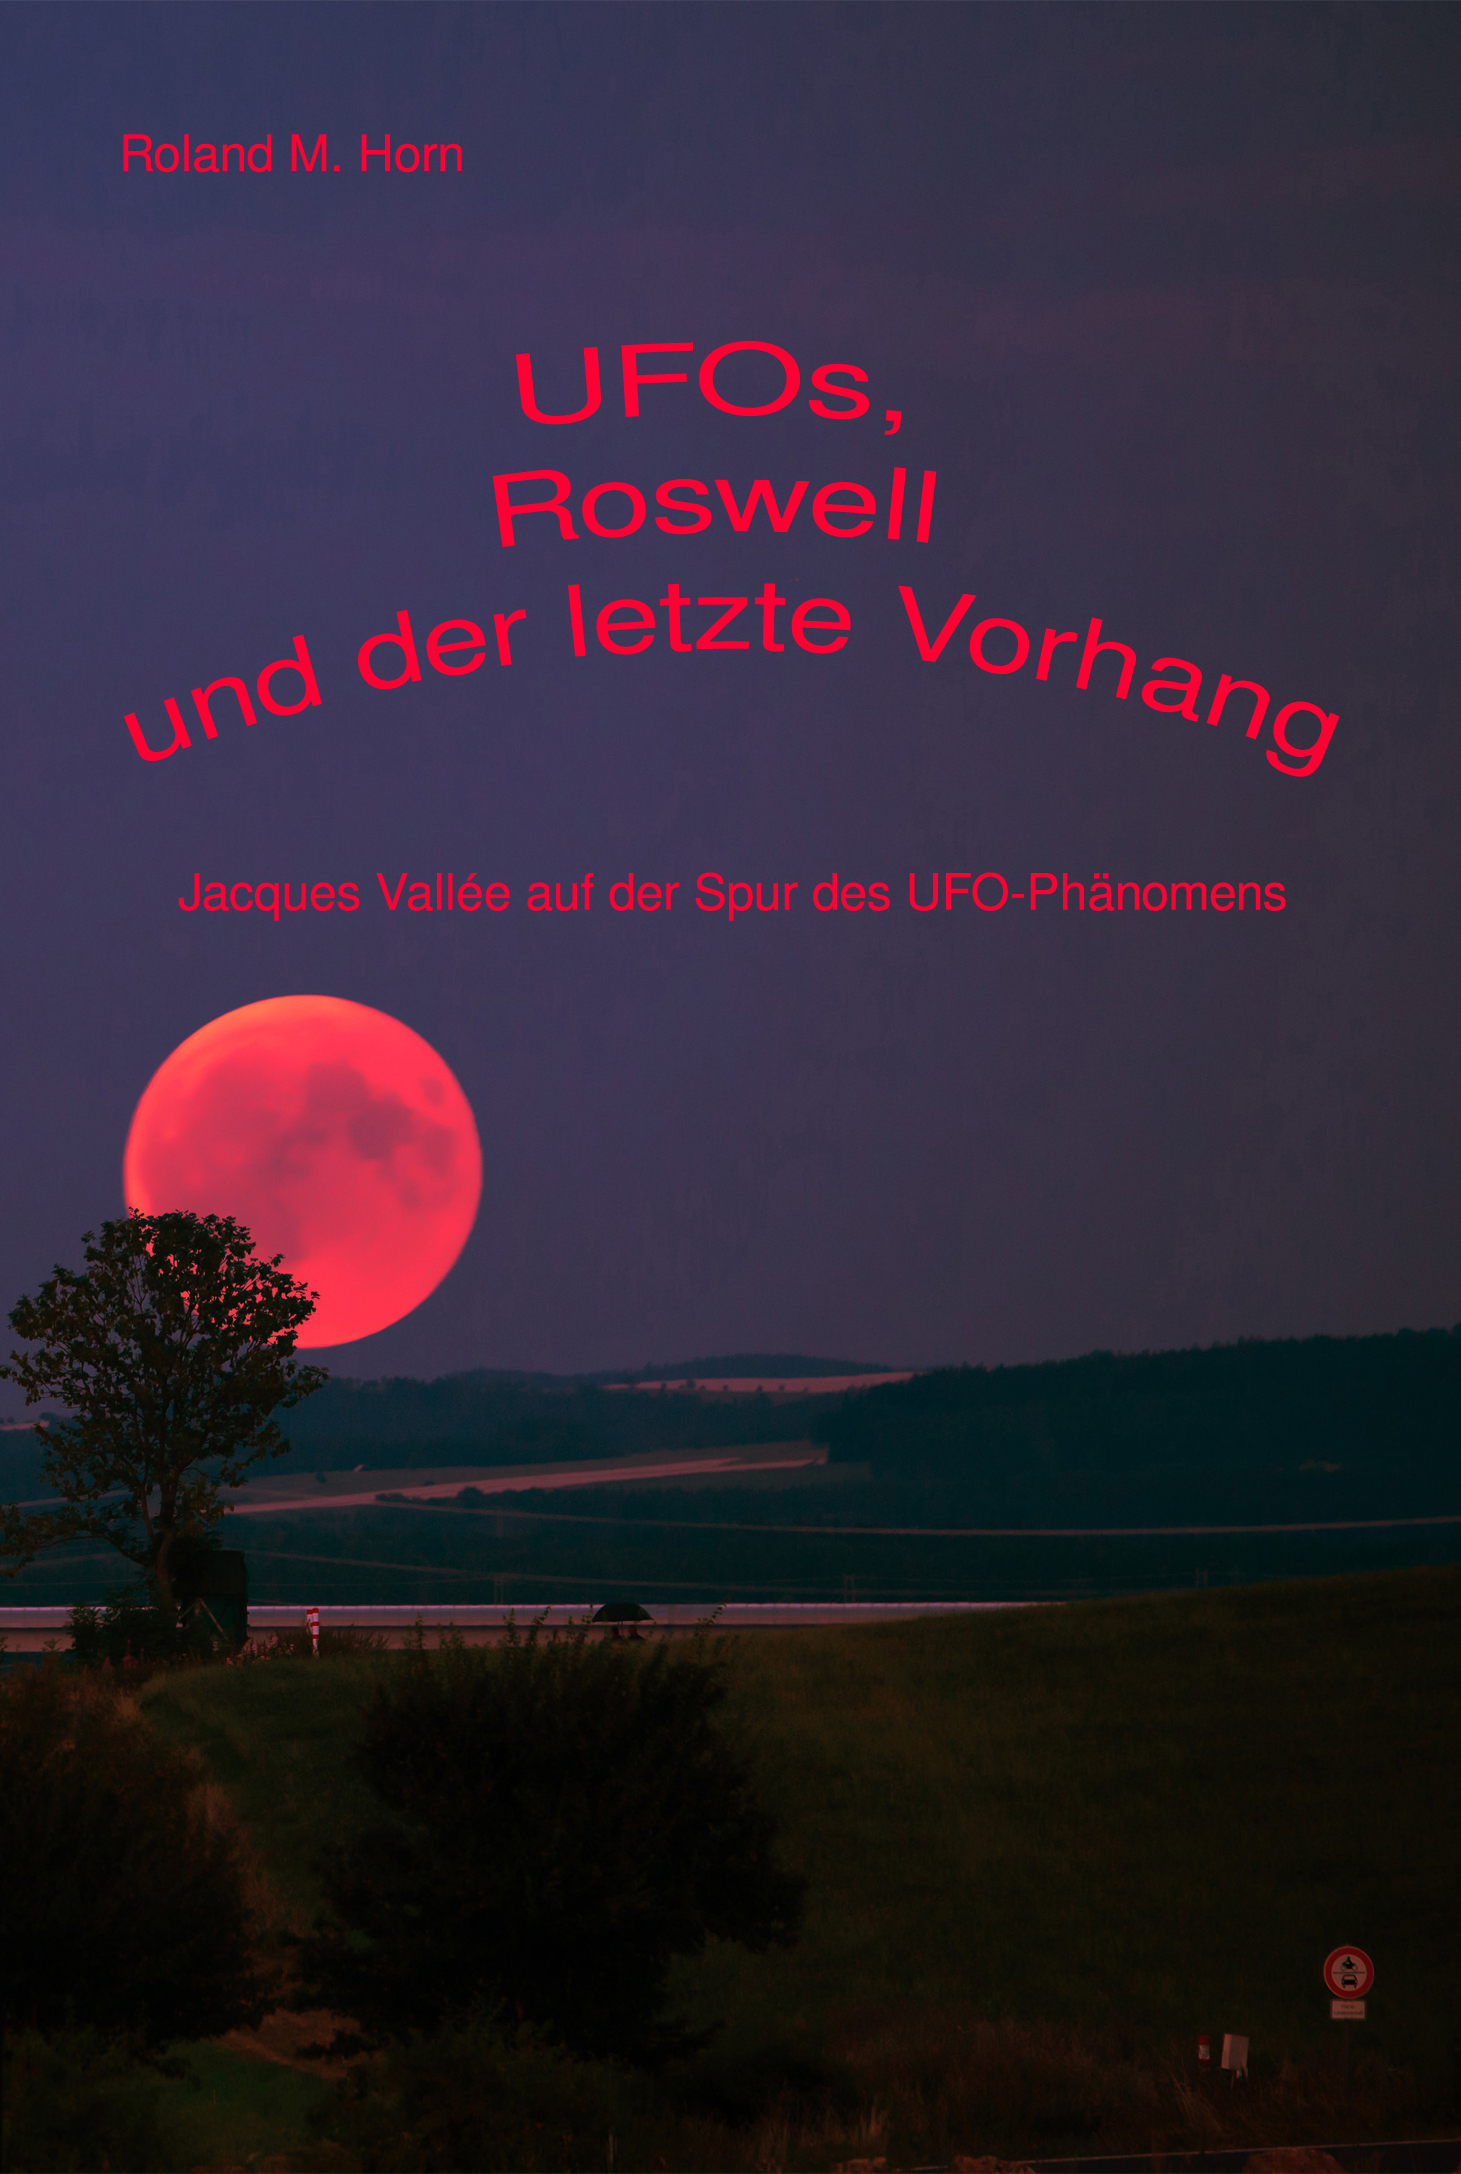 Roland M. Horn: UFOs, Roswell und der letzte Vorhang: Jacques Vallée auf der Spur des UFO-Phänomens (Cover)